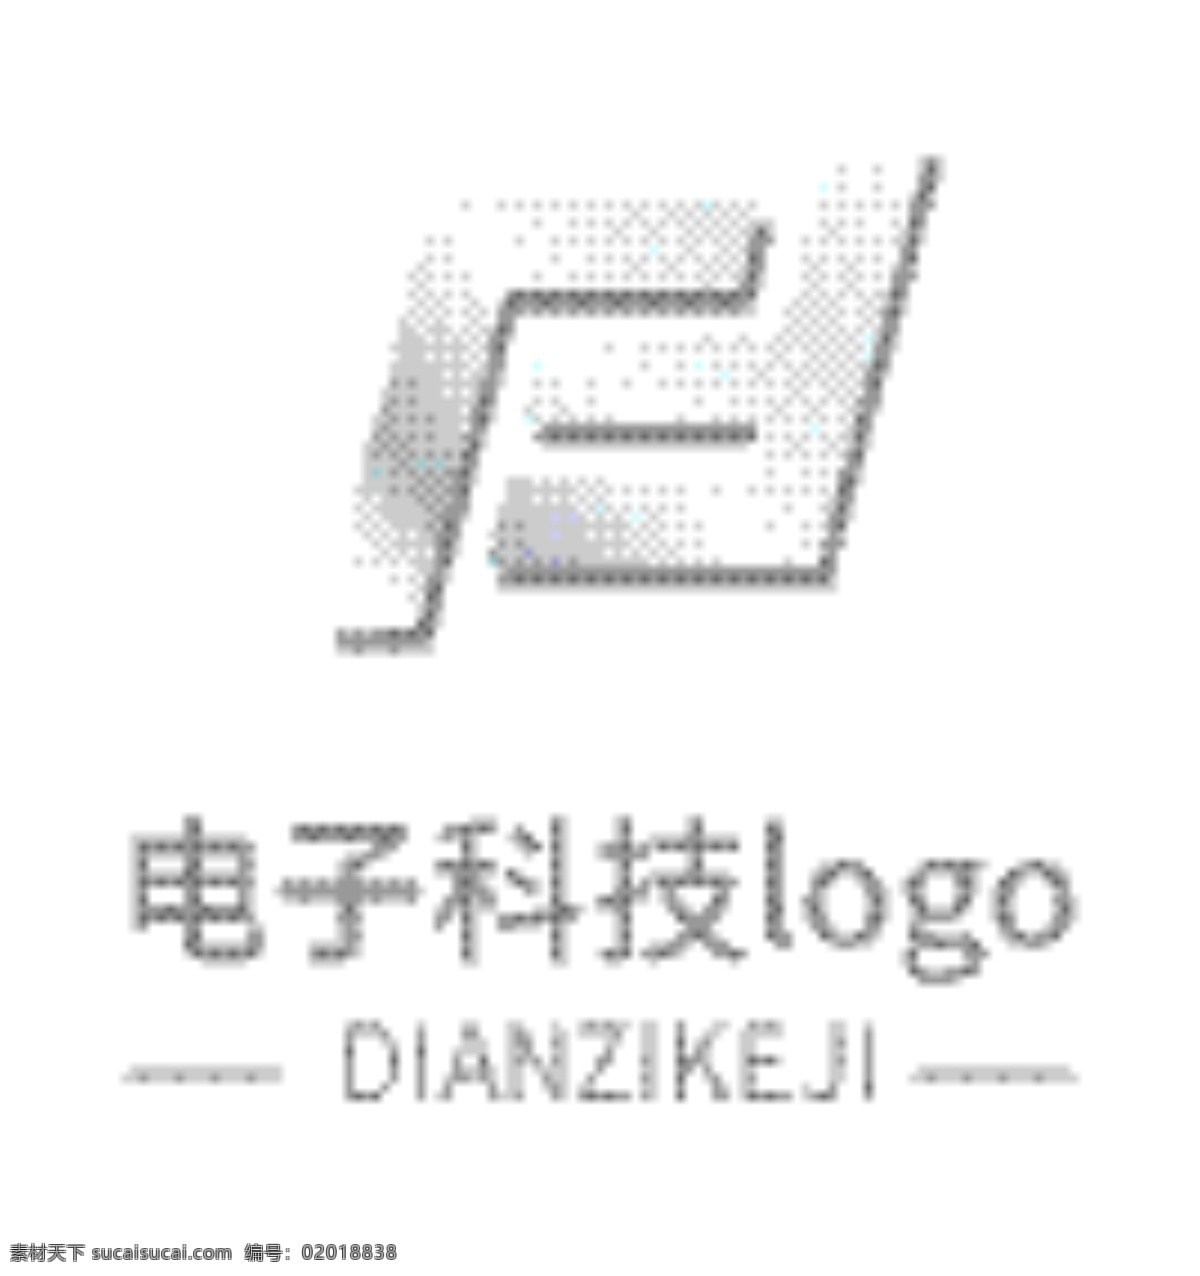 商务 电子 科技 logo 商务企业 logo设计 电子logo 企业logo 银色logo